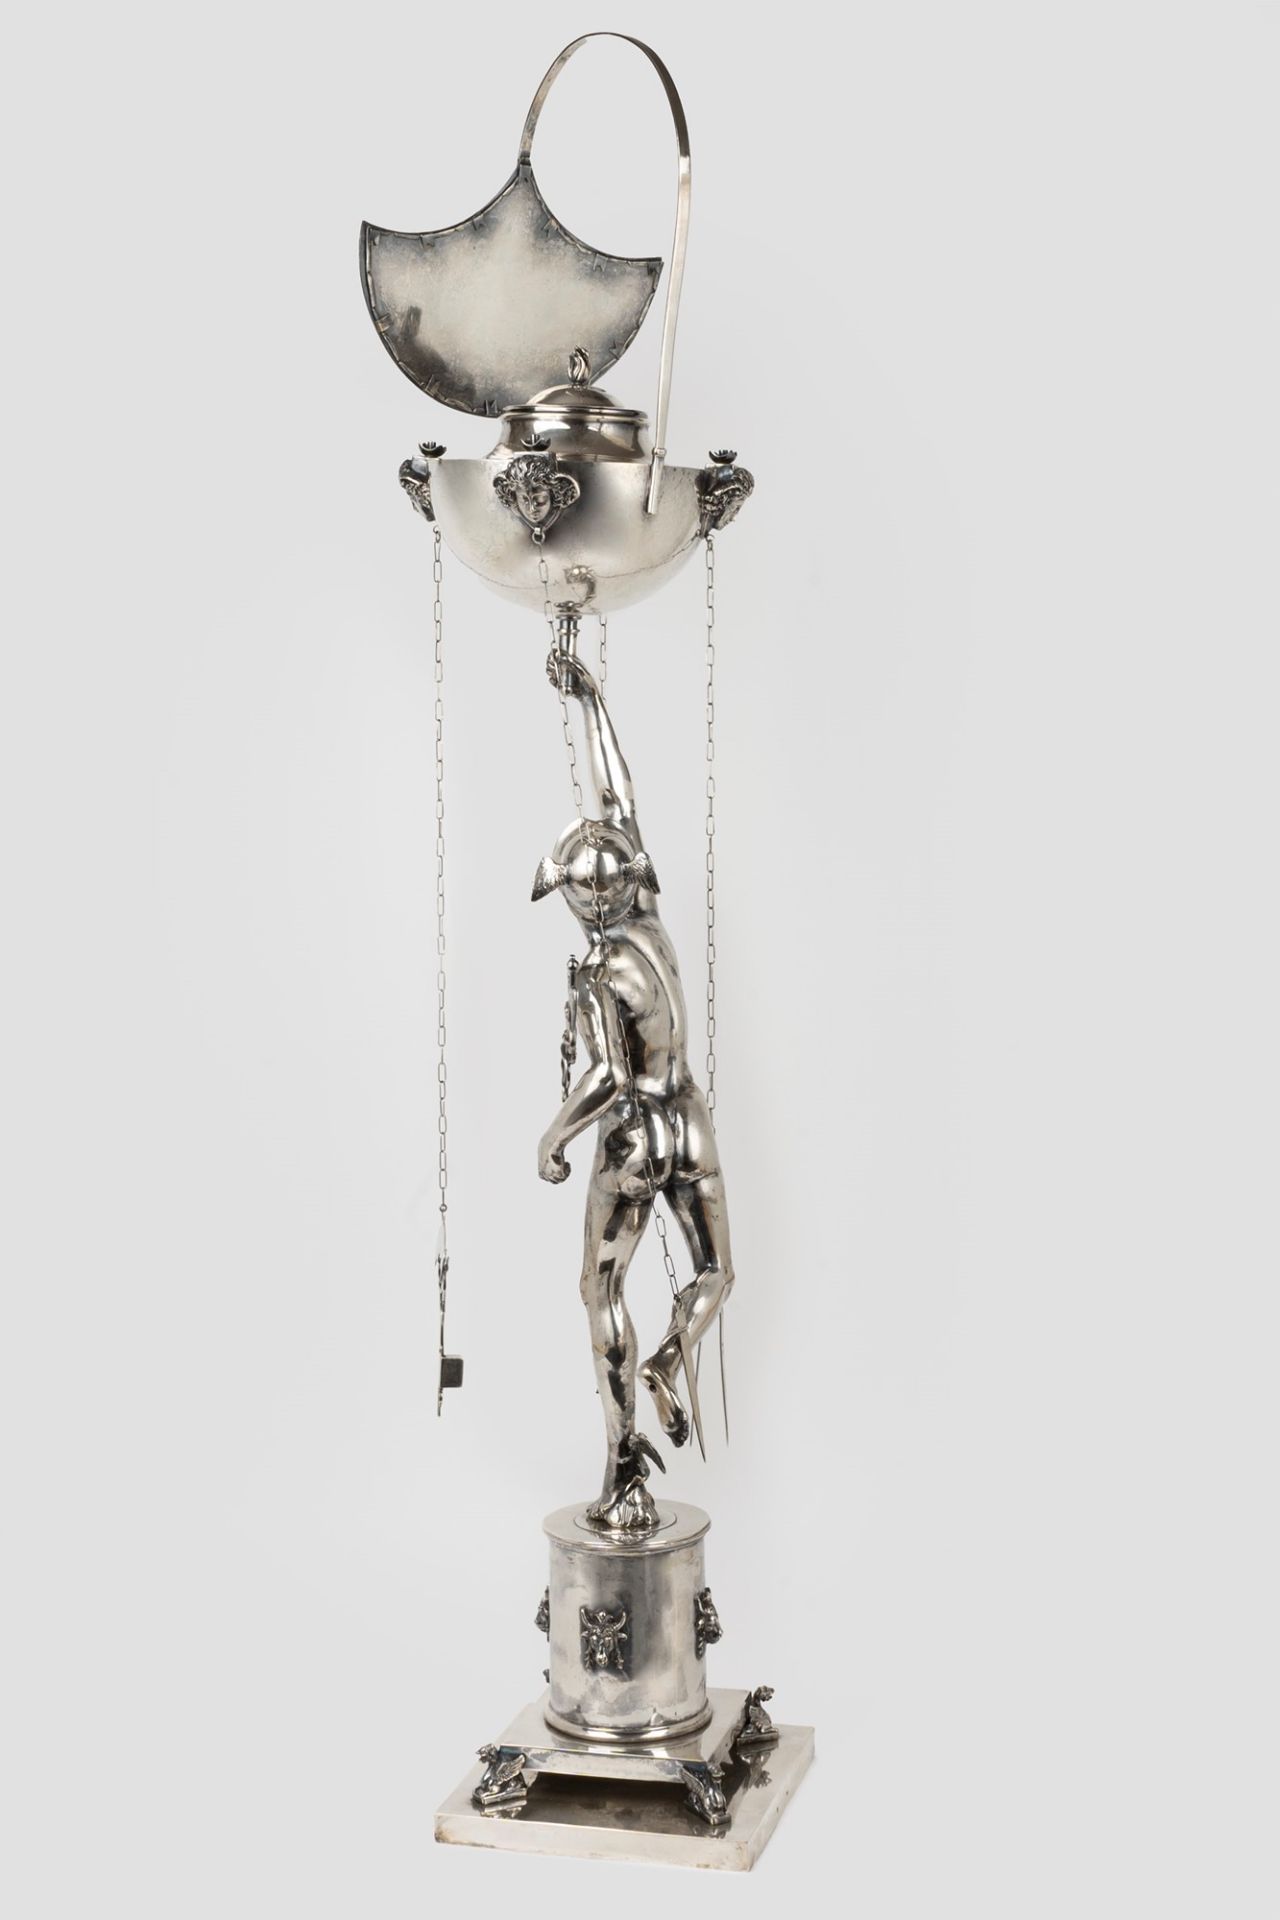 Roman silver oil lamp representing Mercury, by Giambologna, 20th century - Image 2 of 6